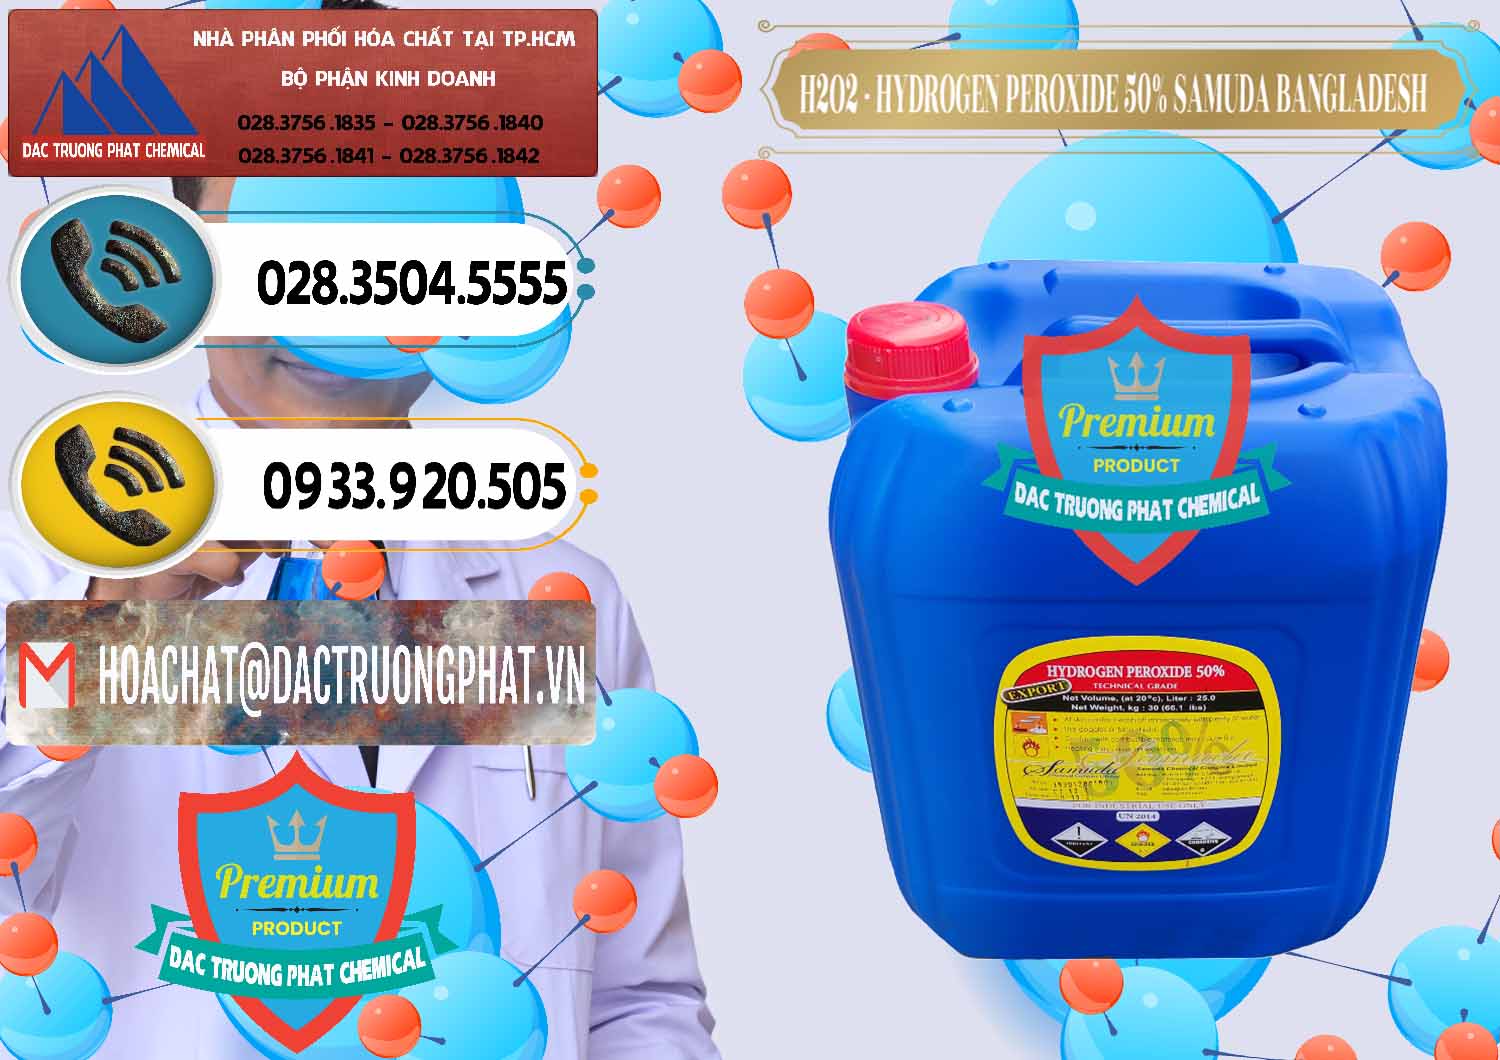 Cty chuyên bán ( cung ứng ) H2O2 - Hydrogen Peroxide 50% Samuda Bangladesh - 0077 - Đơn vị cung cấp và bán hóa chất tại TP.HCM - hoachatdetnhuom.vn